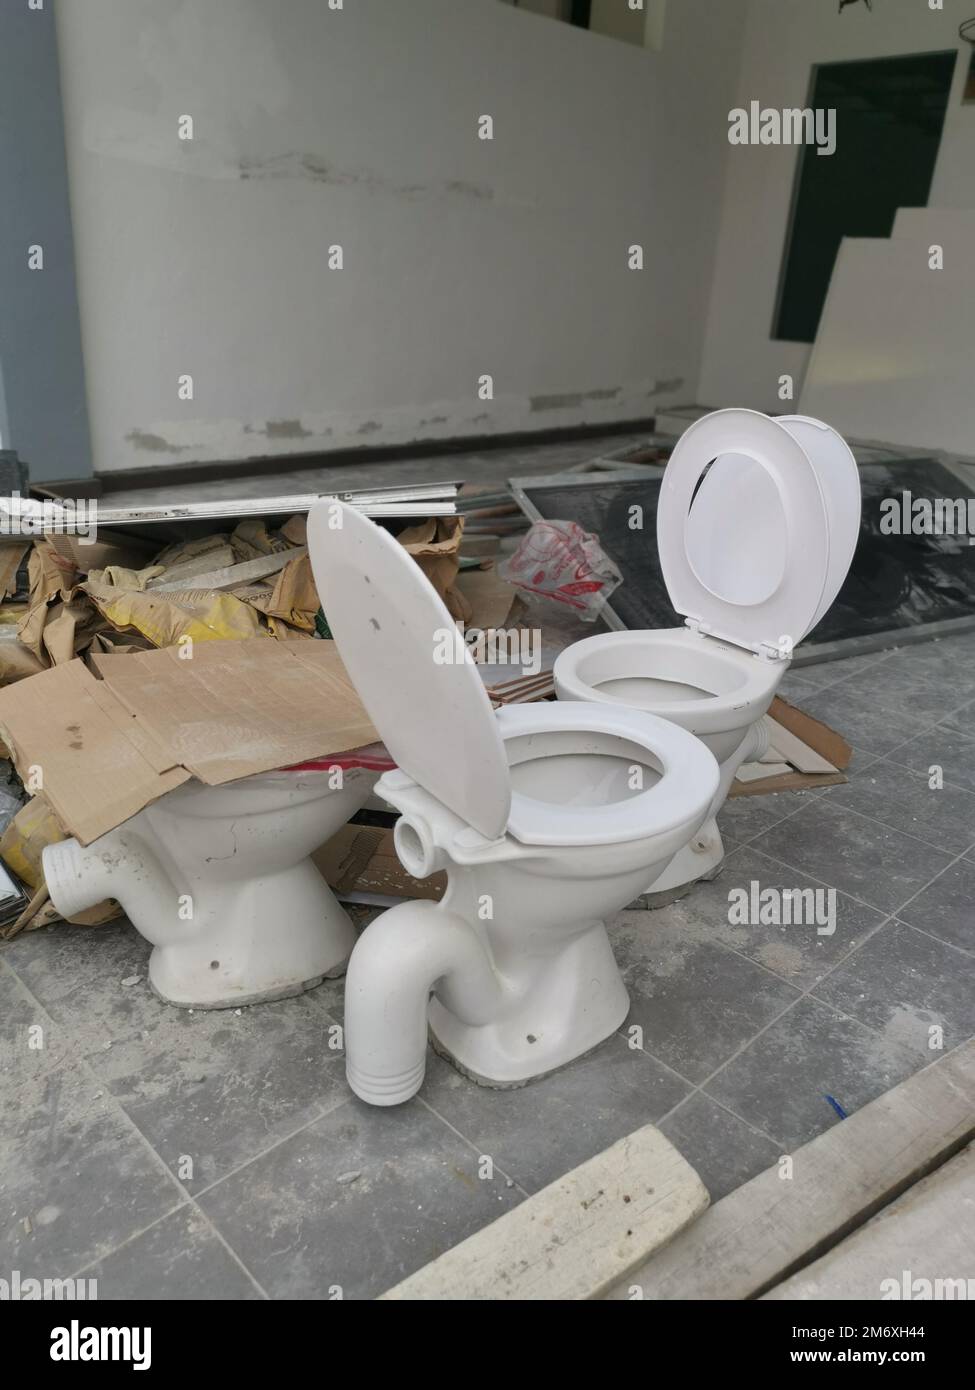 white ceramic toilet seat with slid. Stock Photo